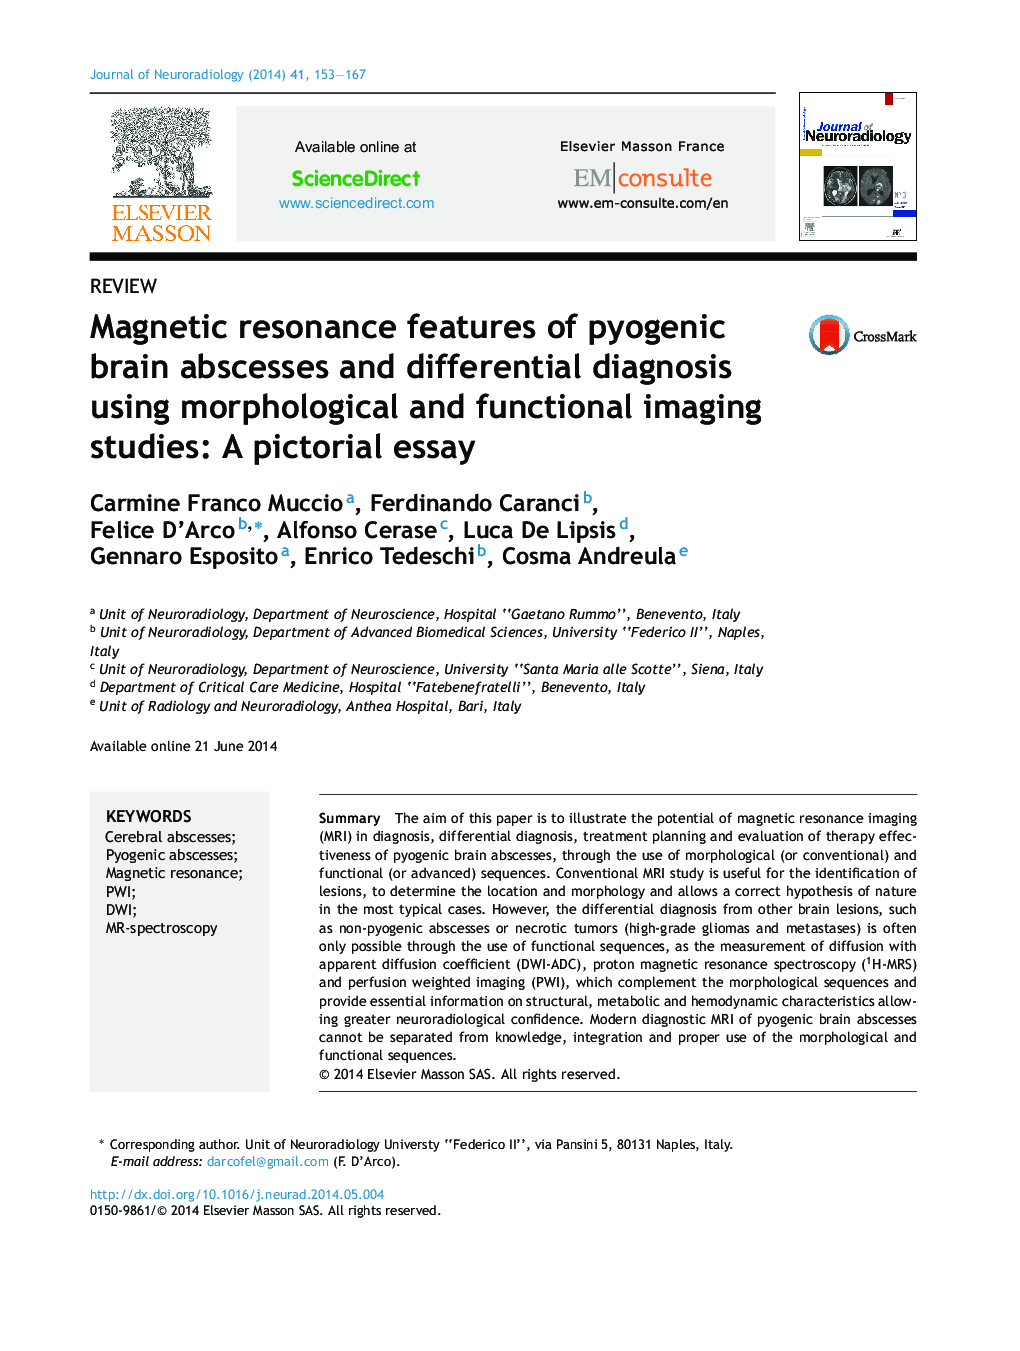 ویژگی های رزونانس مغناطیسی آبسه های مغز پاتوژن و تشخیص افتراقی با استفاده از مطالعات تصویربرداری مورفولوژیکی و عملکردی: مقاله ای تصویری 